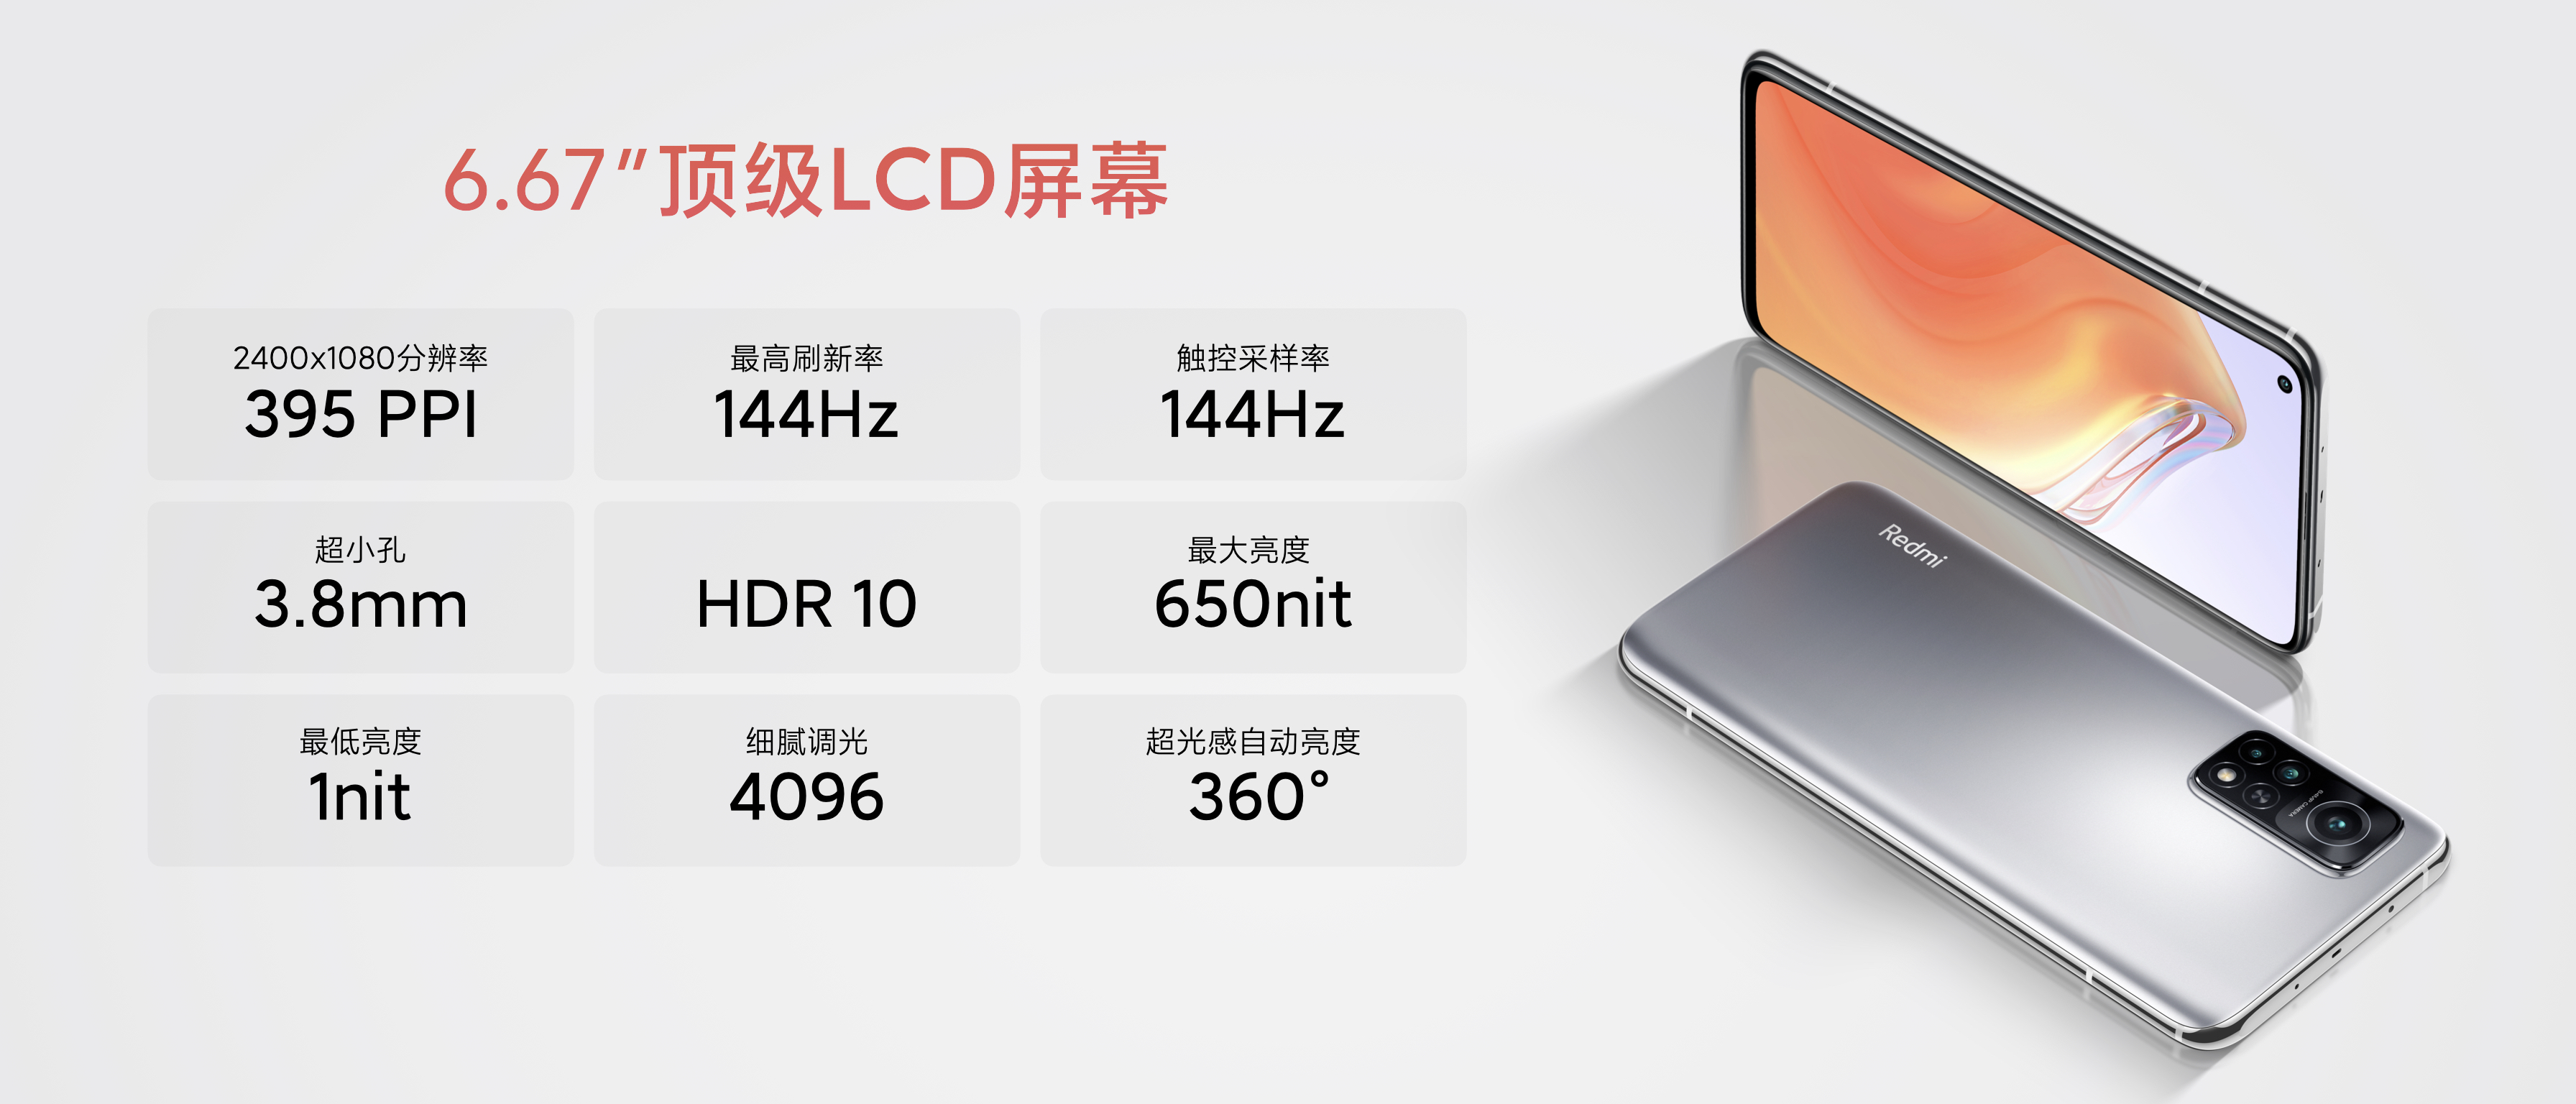 2299元起 Redmi K30S至尊纪念版发布 骁龙865+144Hz高刷